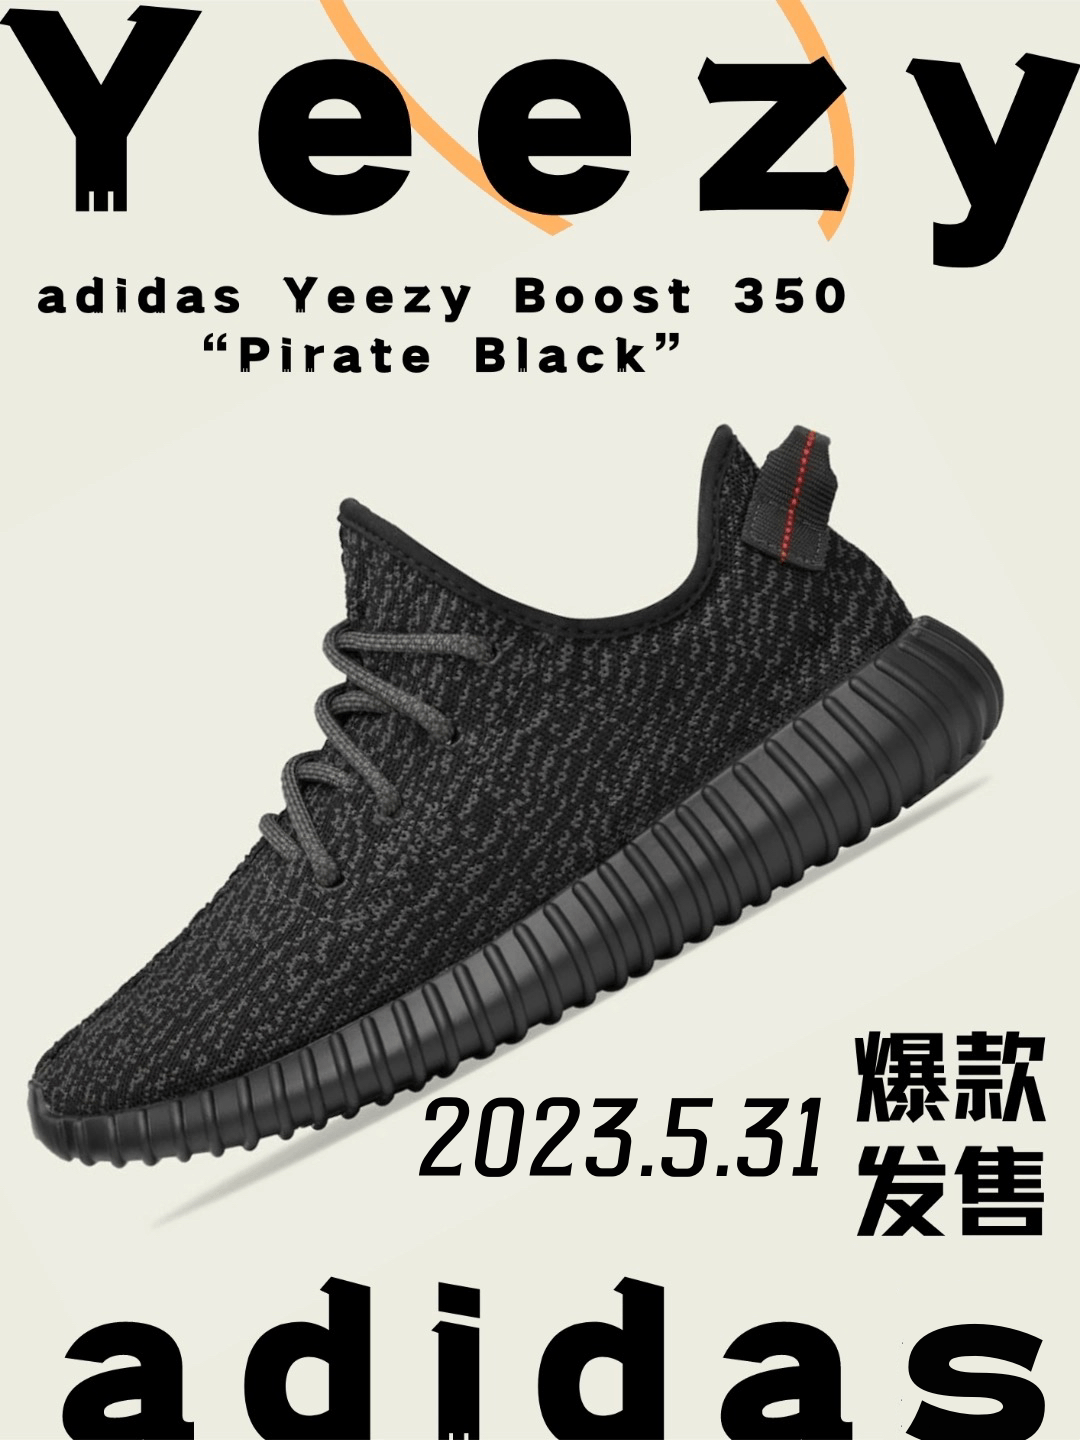 今日发售adidas Yeezy Boost 350 “Pirate Black”黑武士夏季运动休闲-纯原鞋SNEAKER官网